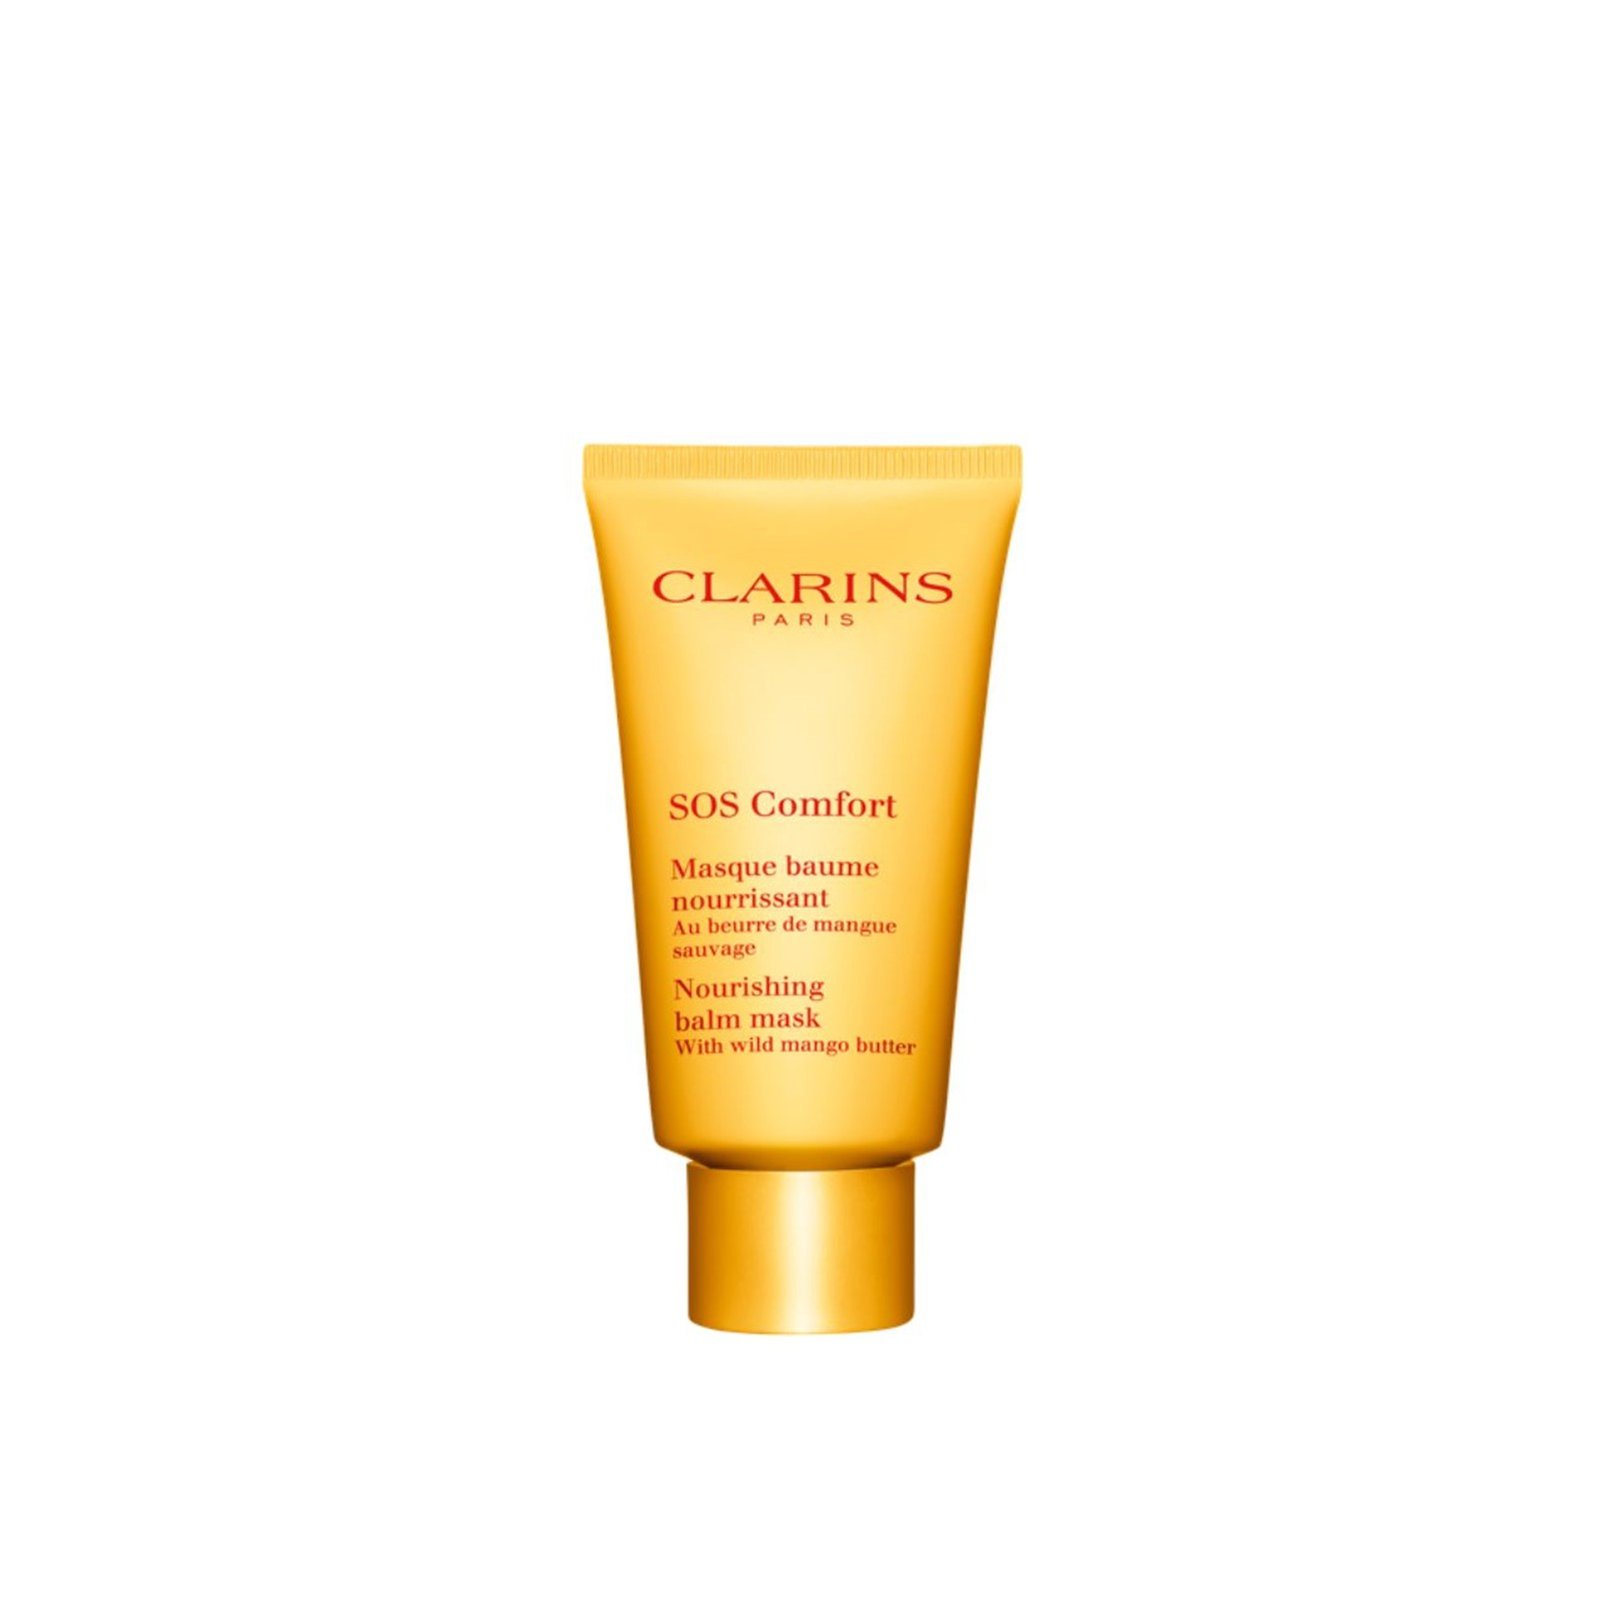 Clarins SOS Comfort Nourishing Balm Mask 75ml (2.3 fl oz)